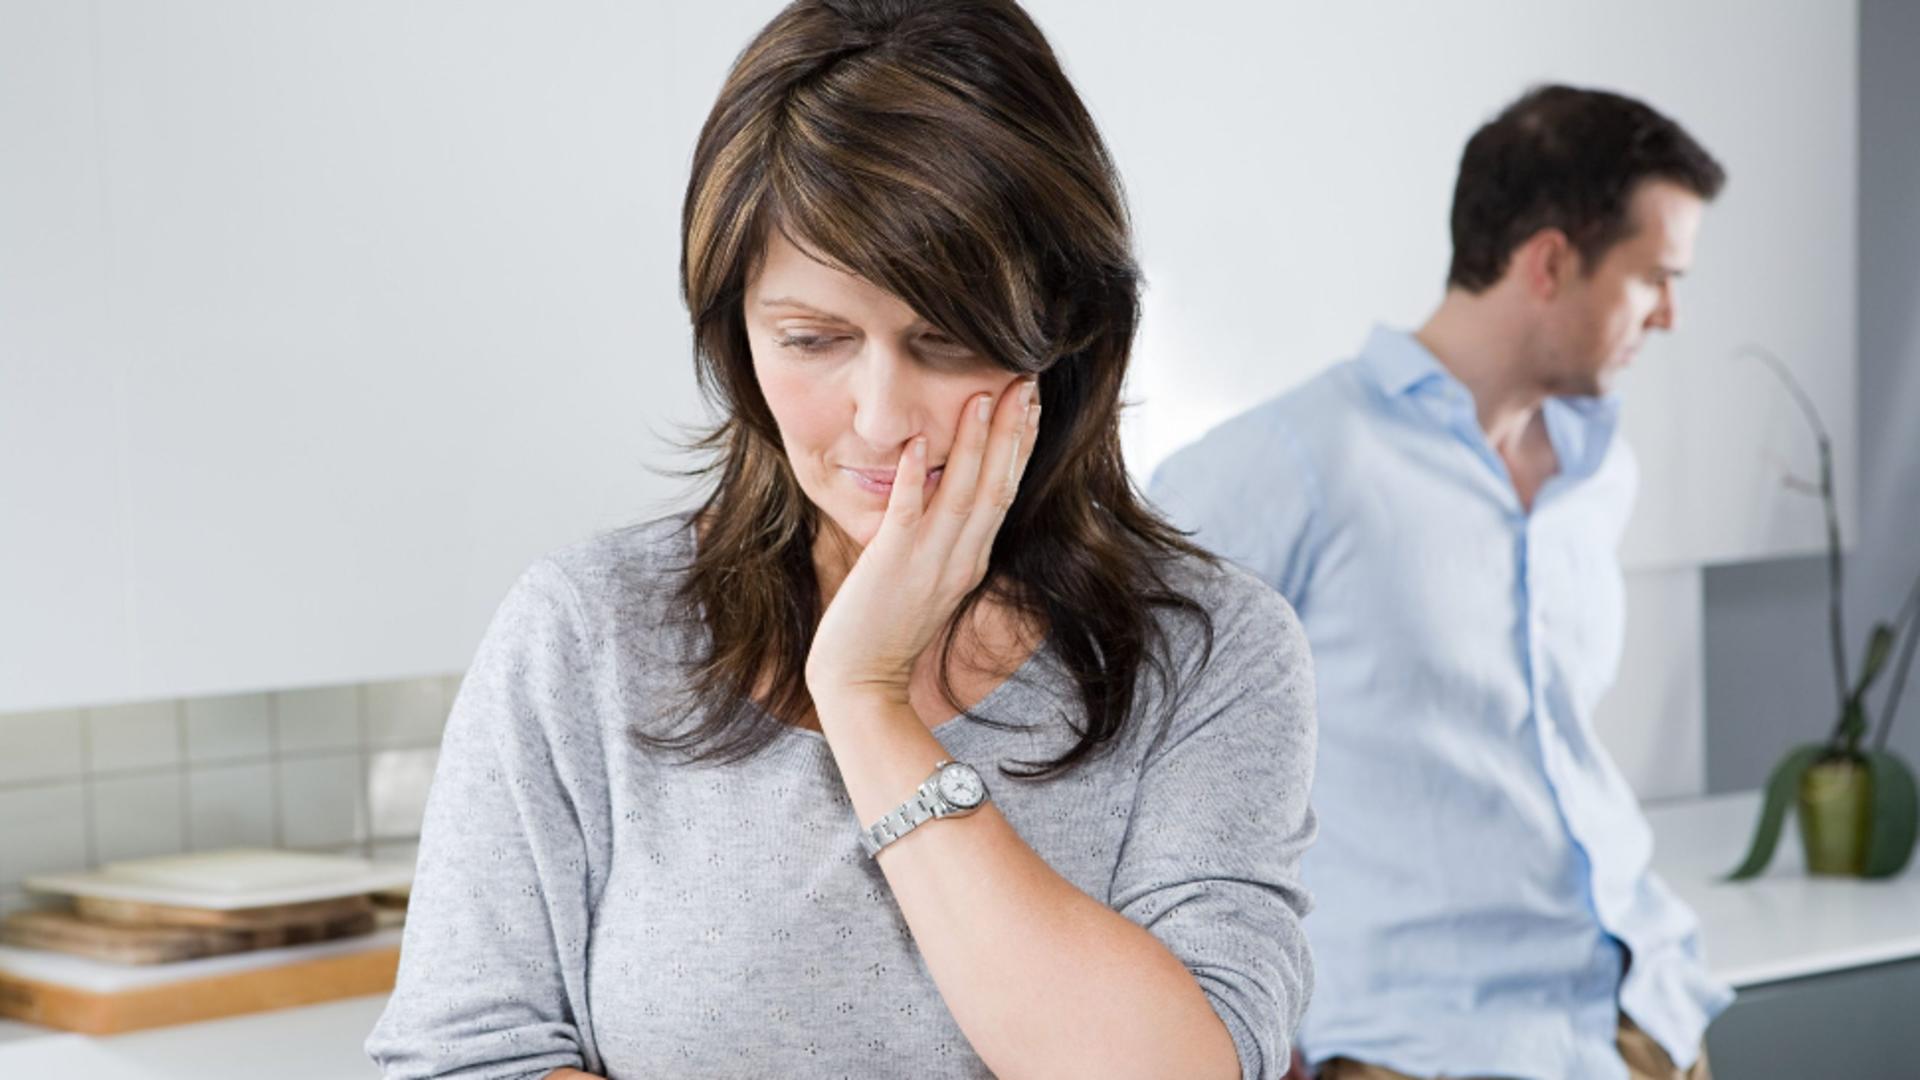 Principalele 8 motive de divorț - Cum le putem preîntâmpina